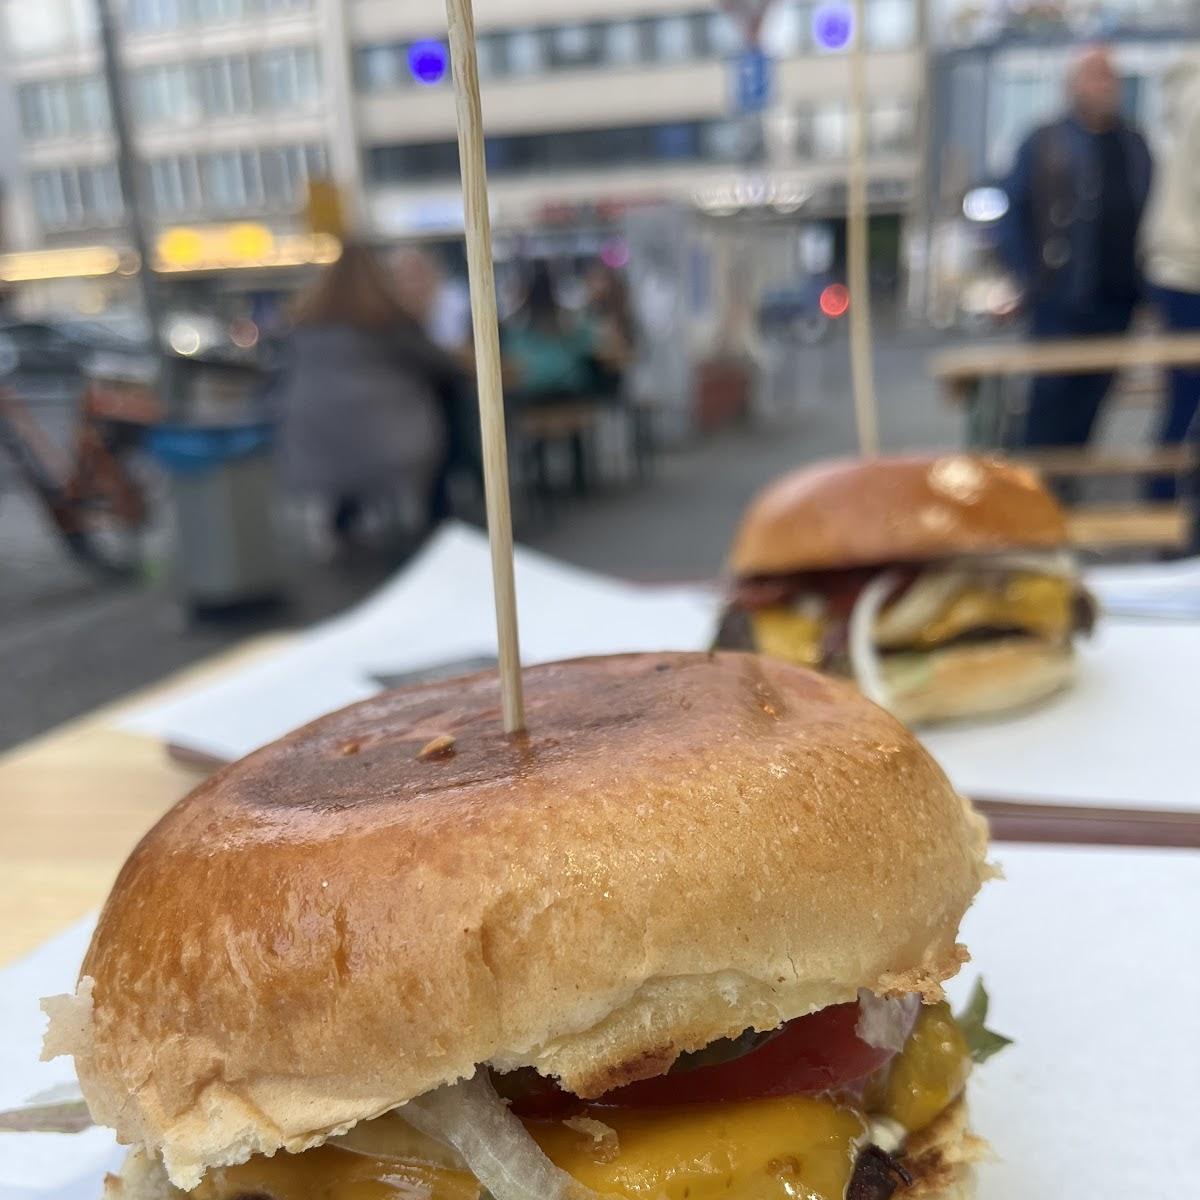 Restaurant "Nett Burger" in Berlin